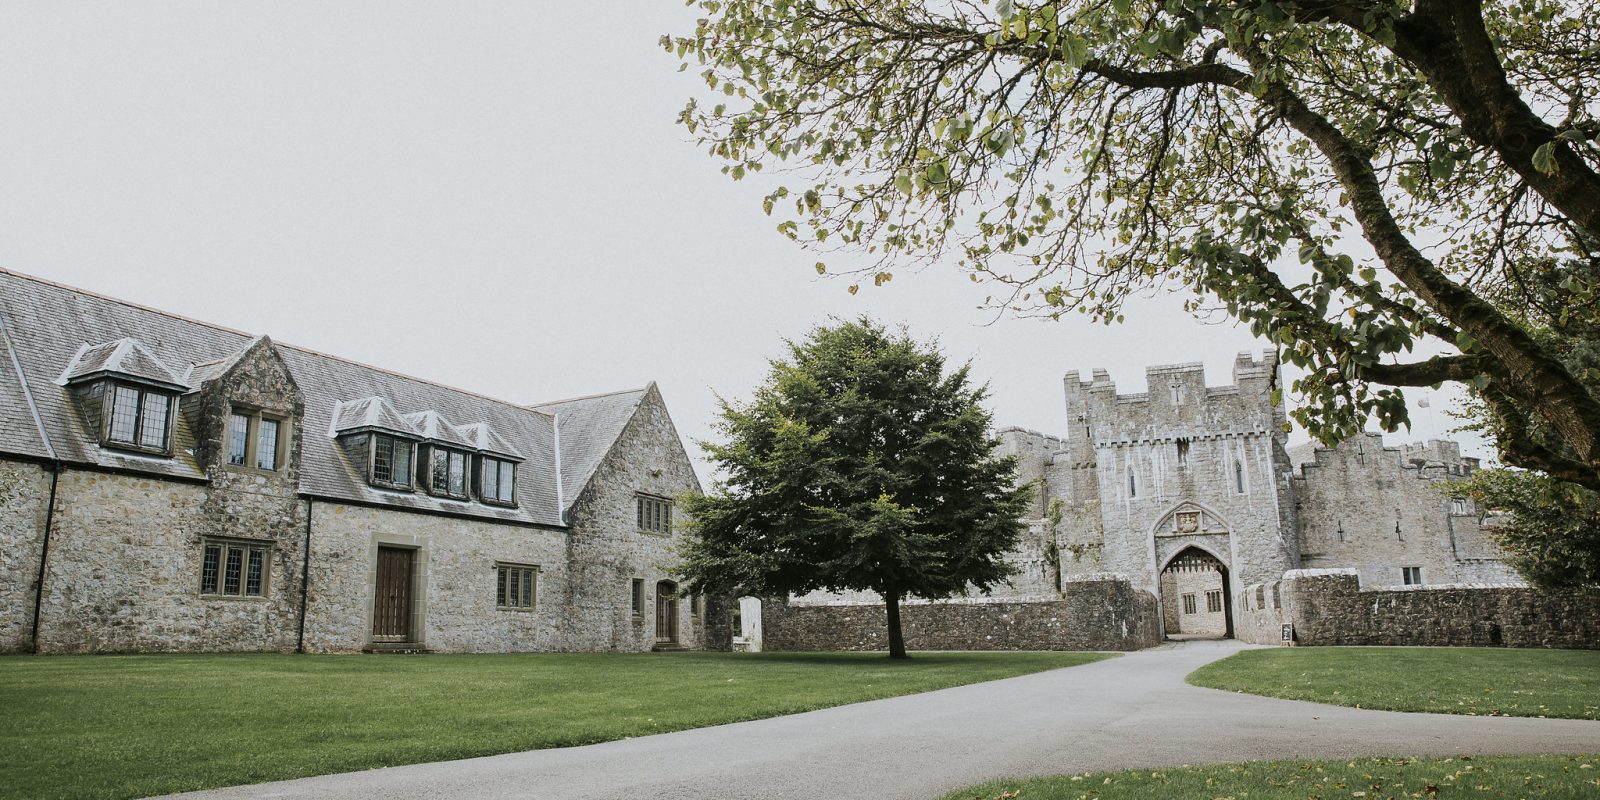 Entrance to St Donat's Castle